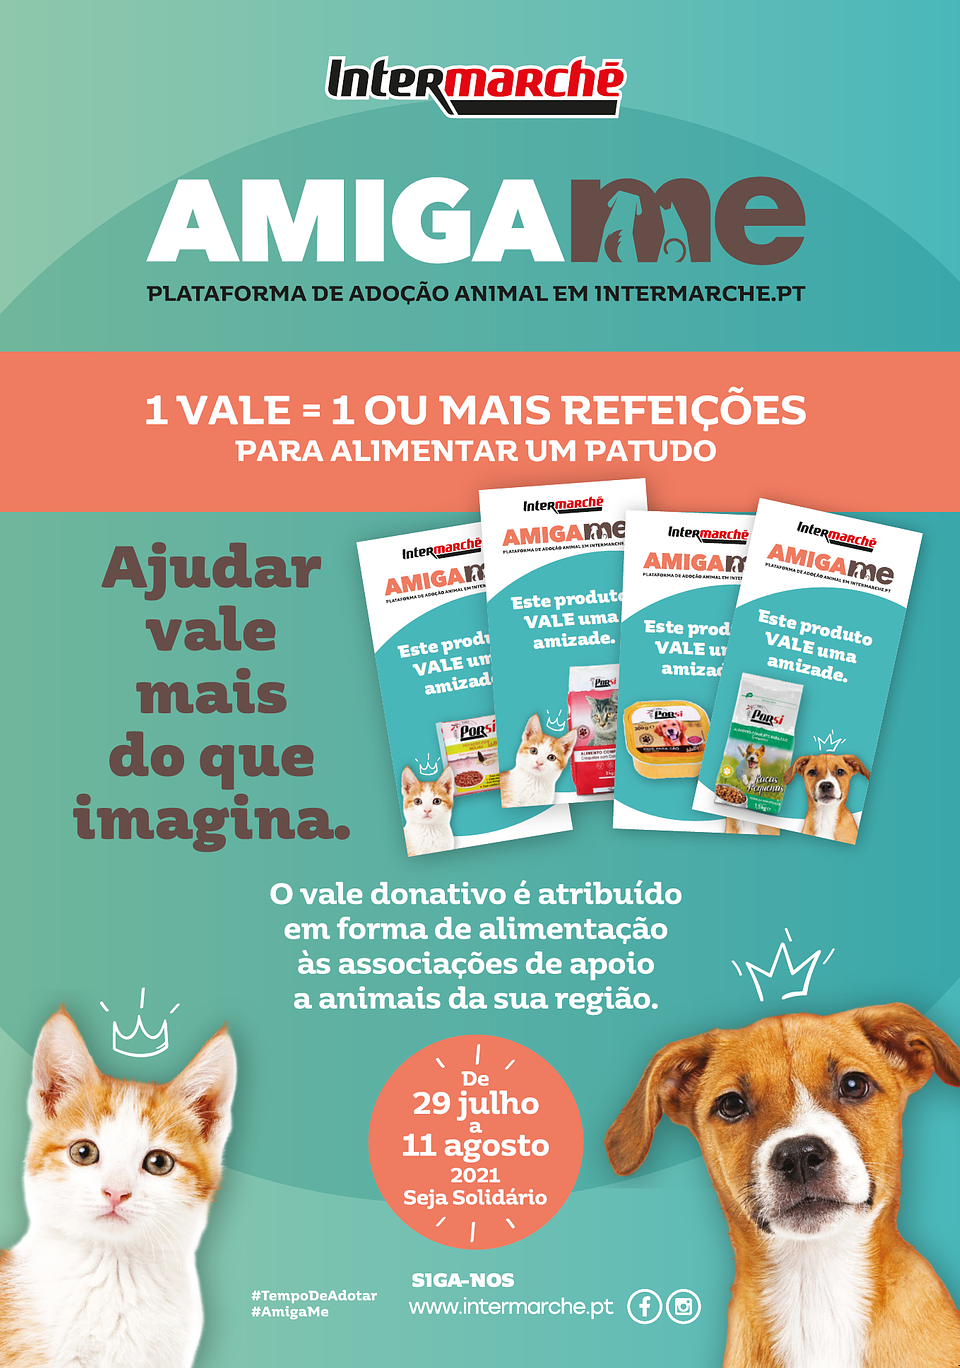 Intermarché apoia animais abandonados com retoma da campanha "AMIGA-ME"